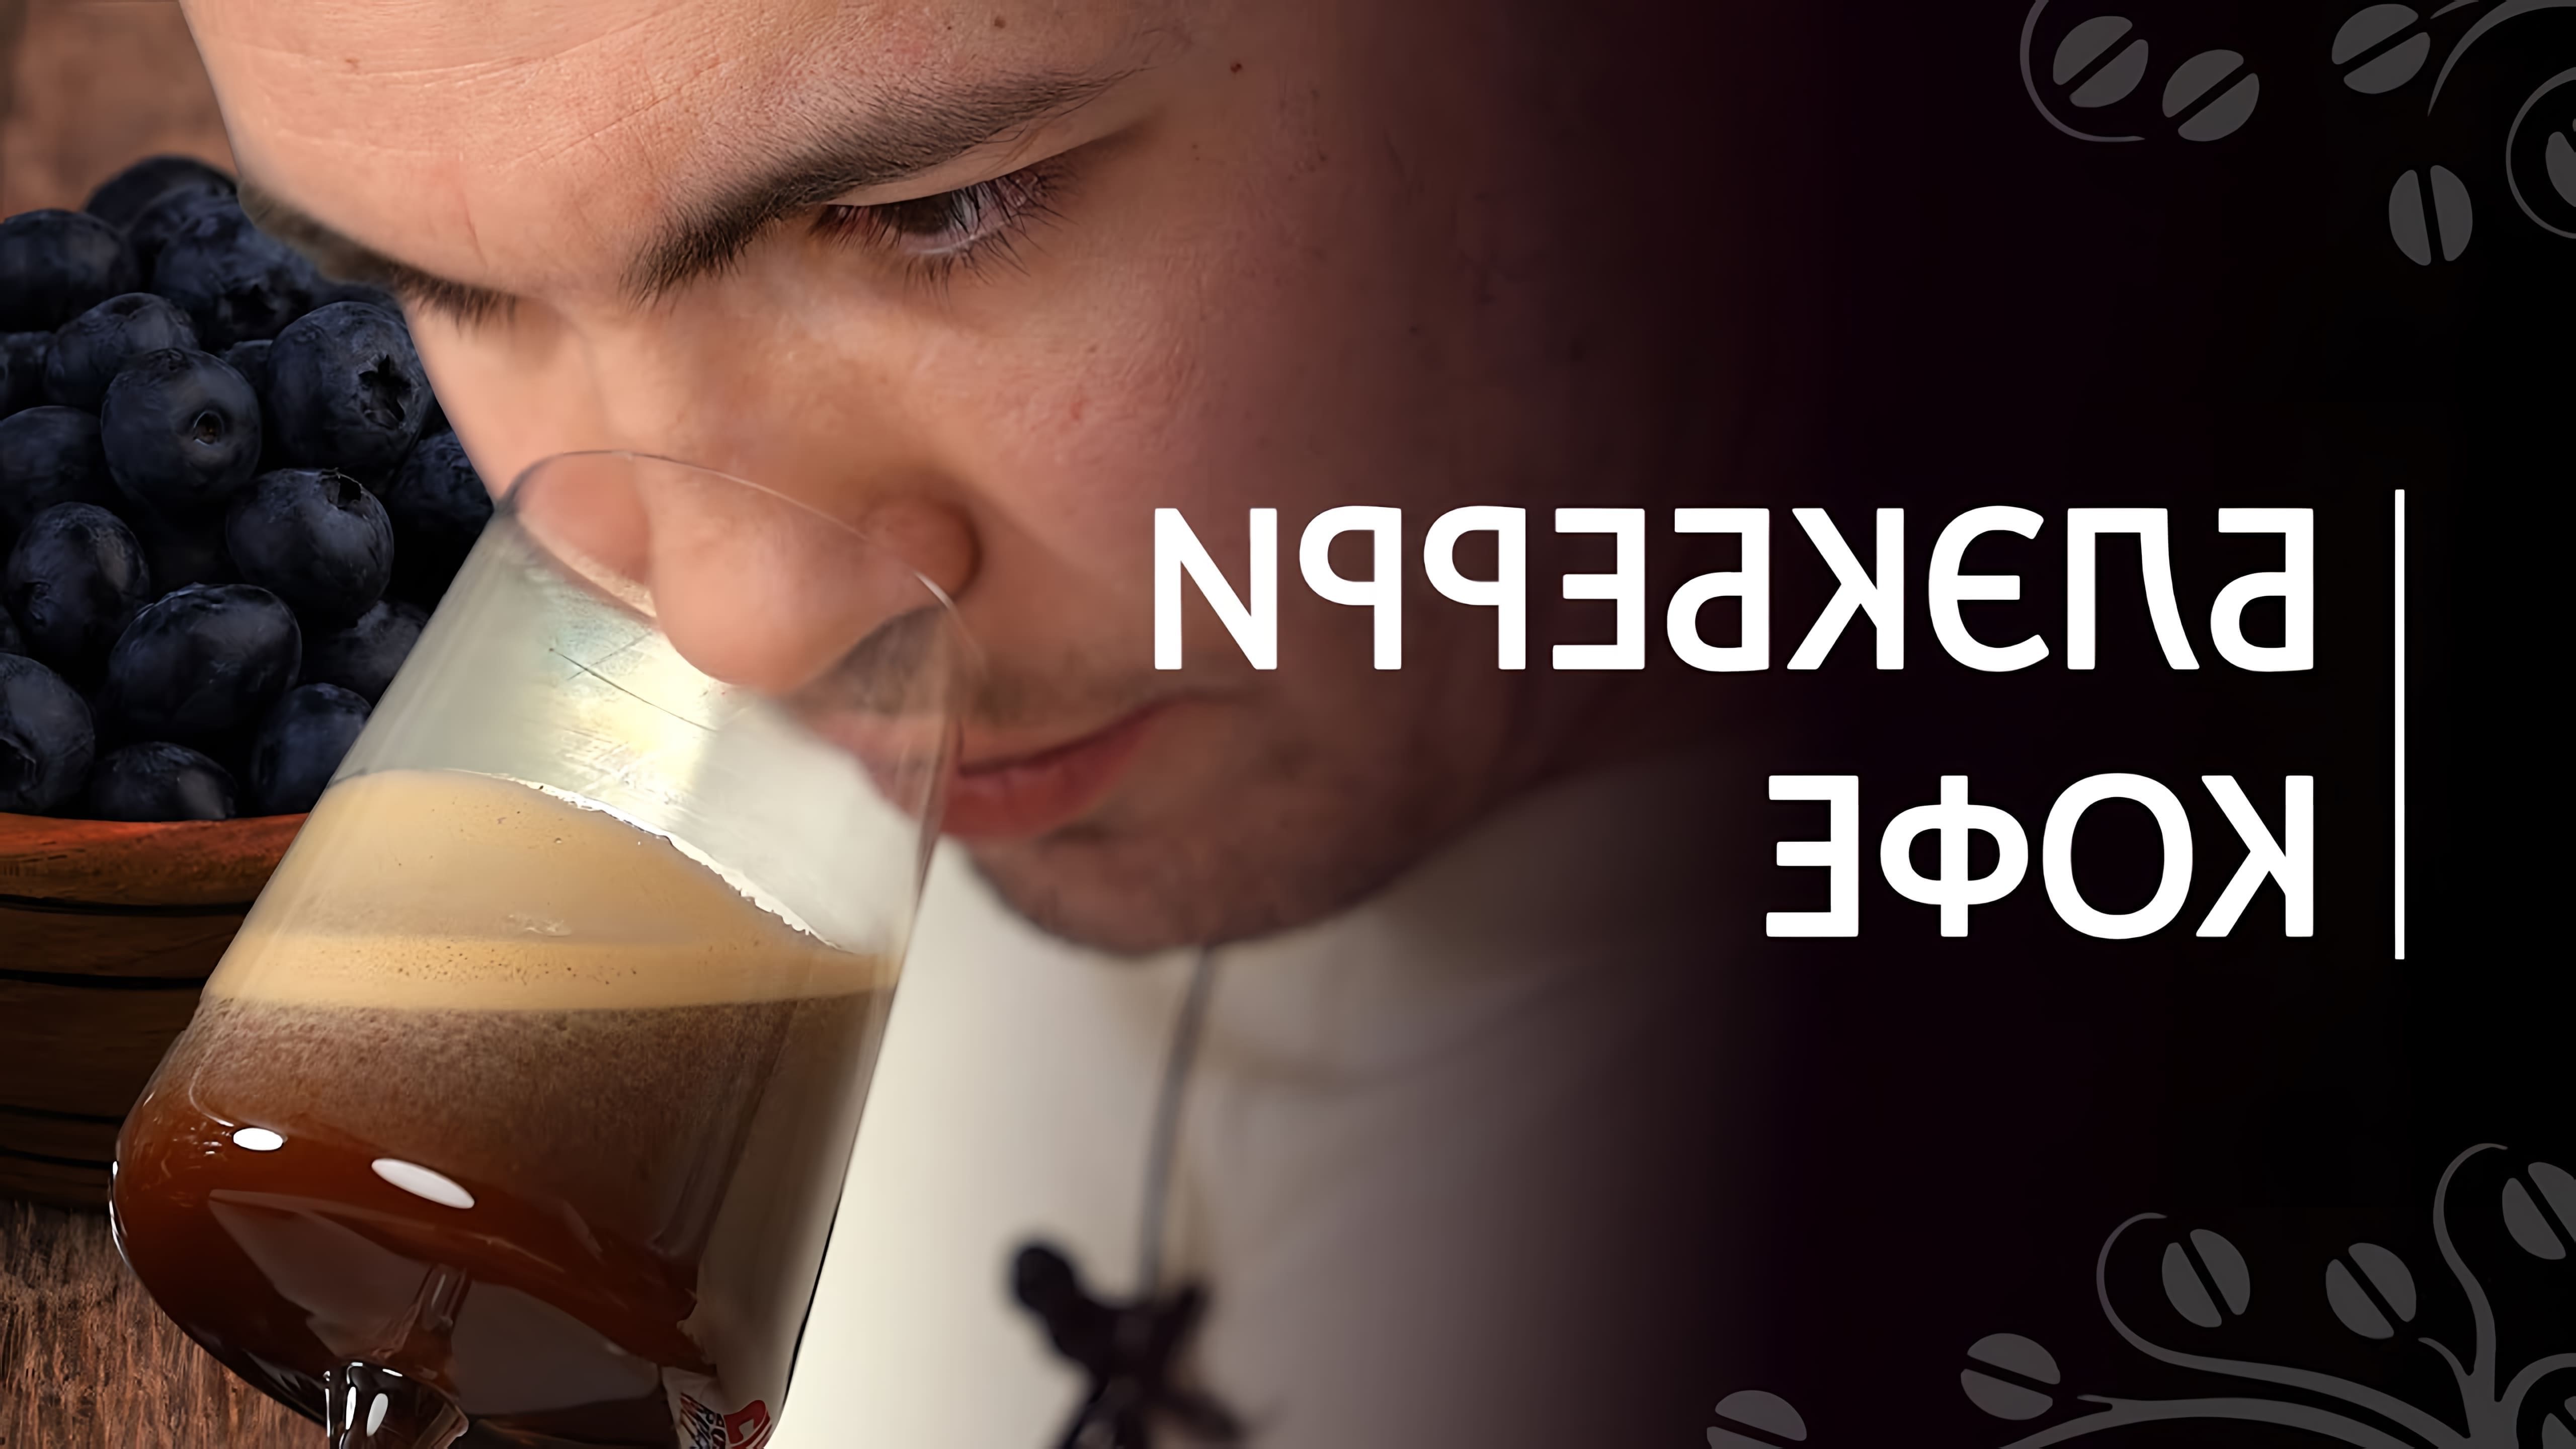 В этом видео Николай Стрельников представляет рецепт авторского напитка Blackberry Cafe